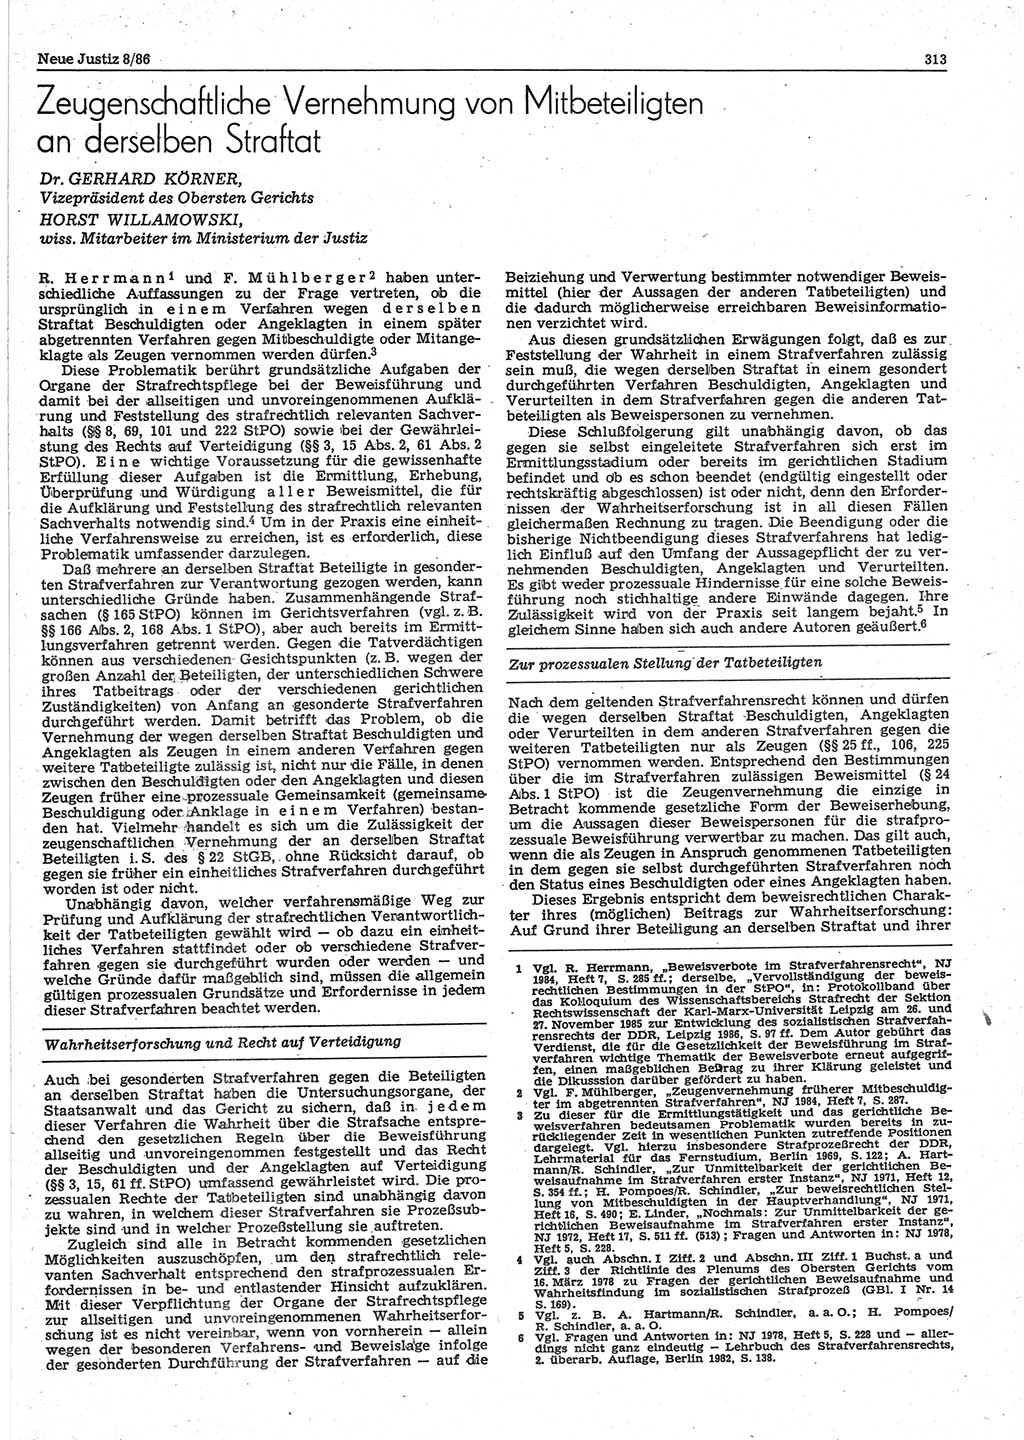 Neue Justiz (NJ), Zeitschrift für sozialistisches Recht und Gesetzlichkeit [Deutsche Demokratische Republik (DDR)], 40. Jahrgang 1986, Seite 313 (NJ DDR 1986, S. 313)